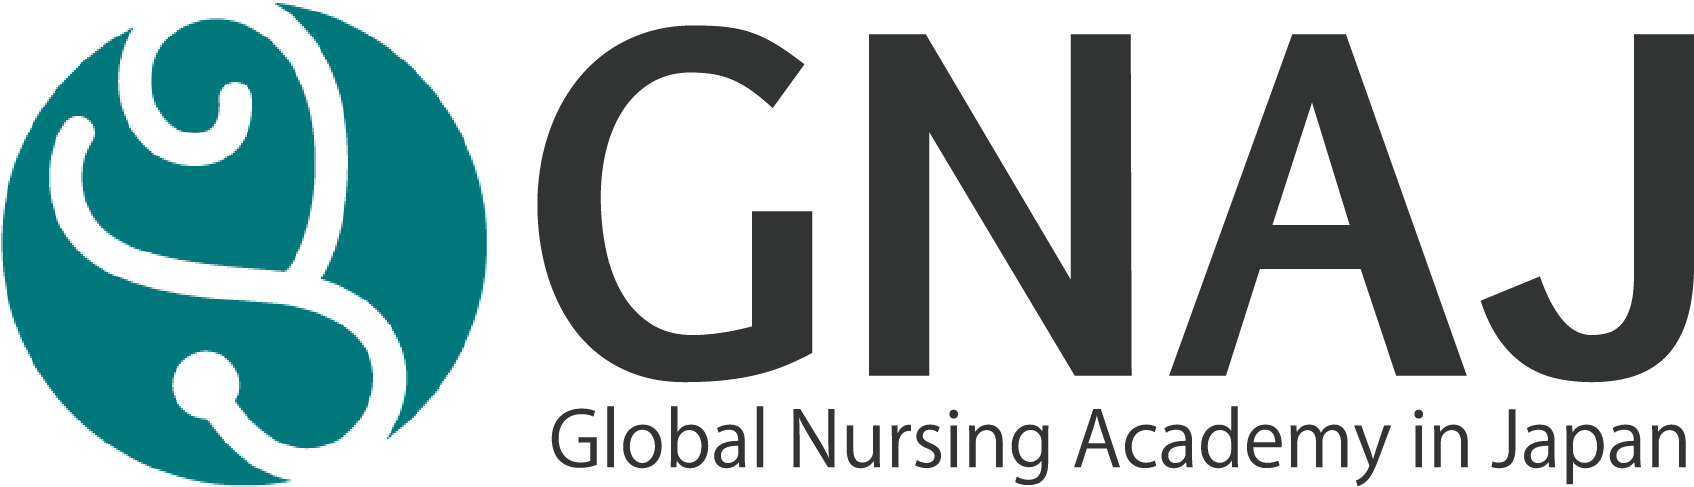 GNAJ日本国際看護師養成講座